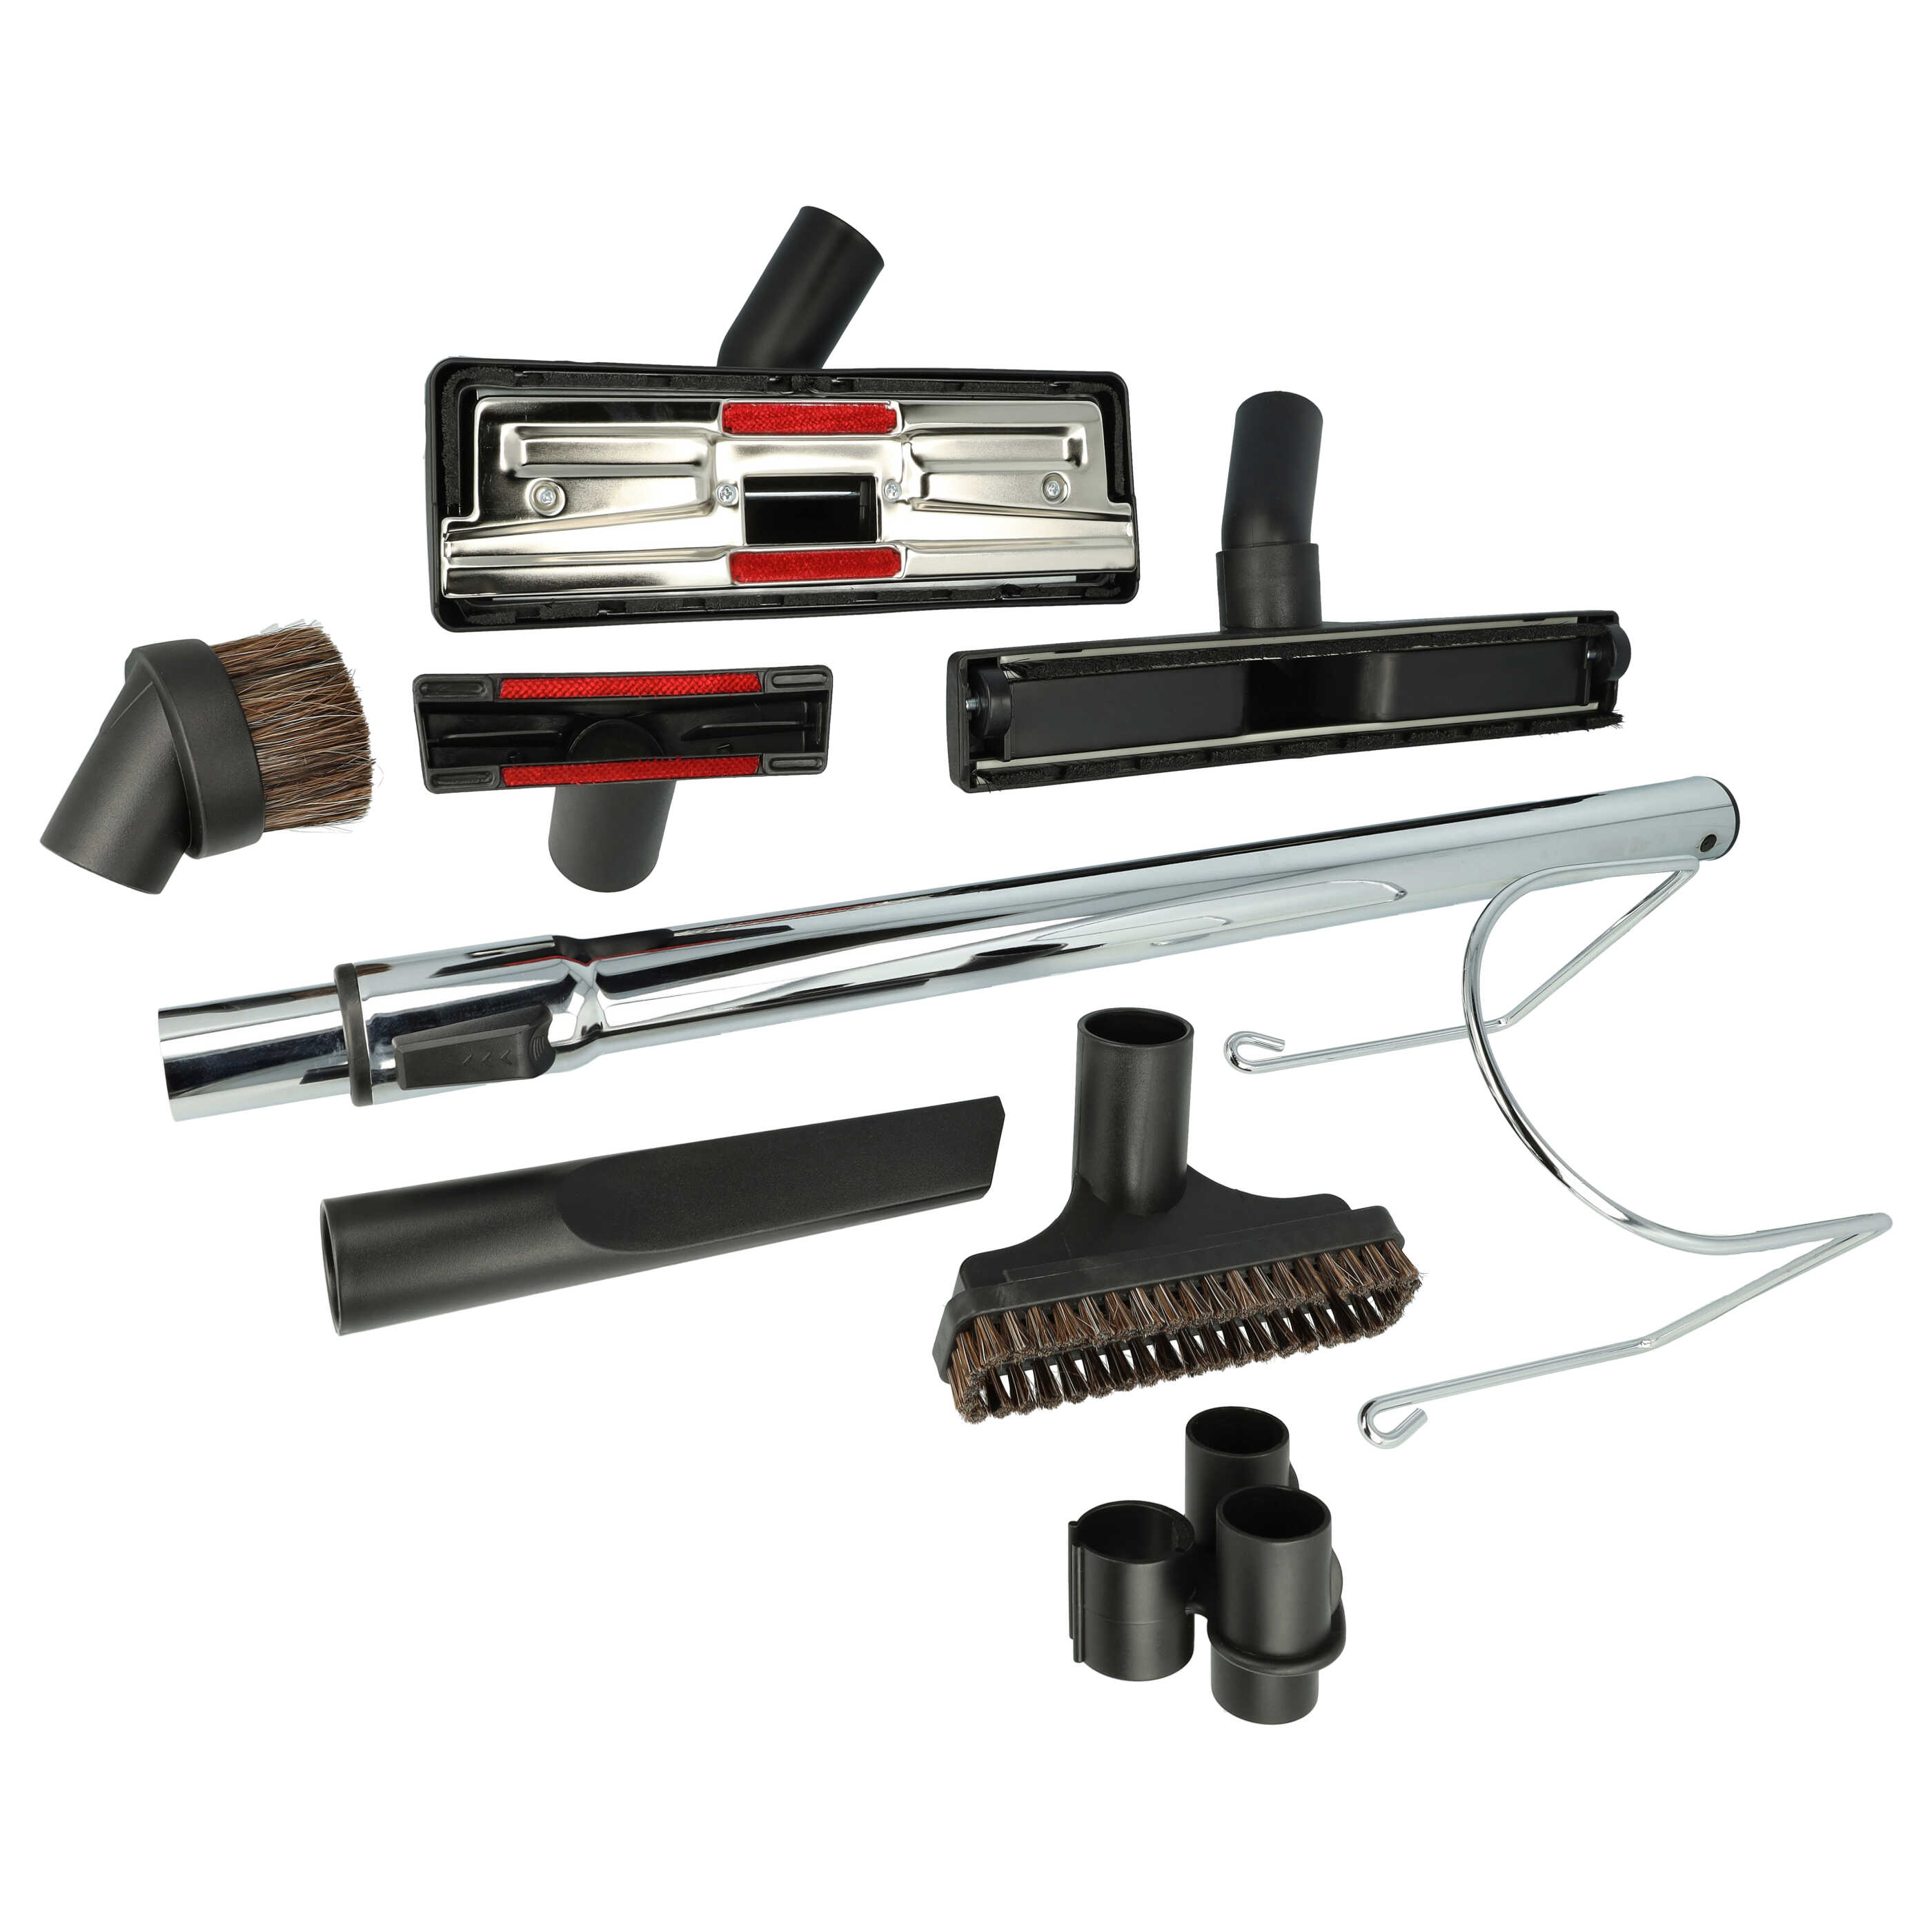 Schlauch-Adapter für diverse Staubsauger, Staubsaugerschläuche - 32 mm Rundanschluss, Kunststoff